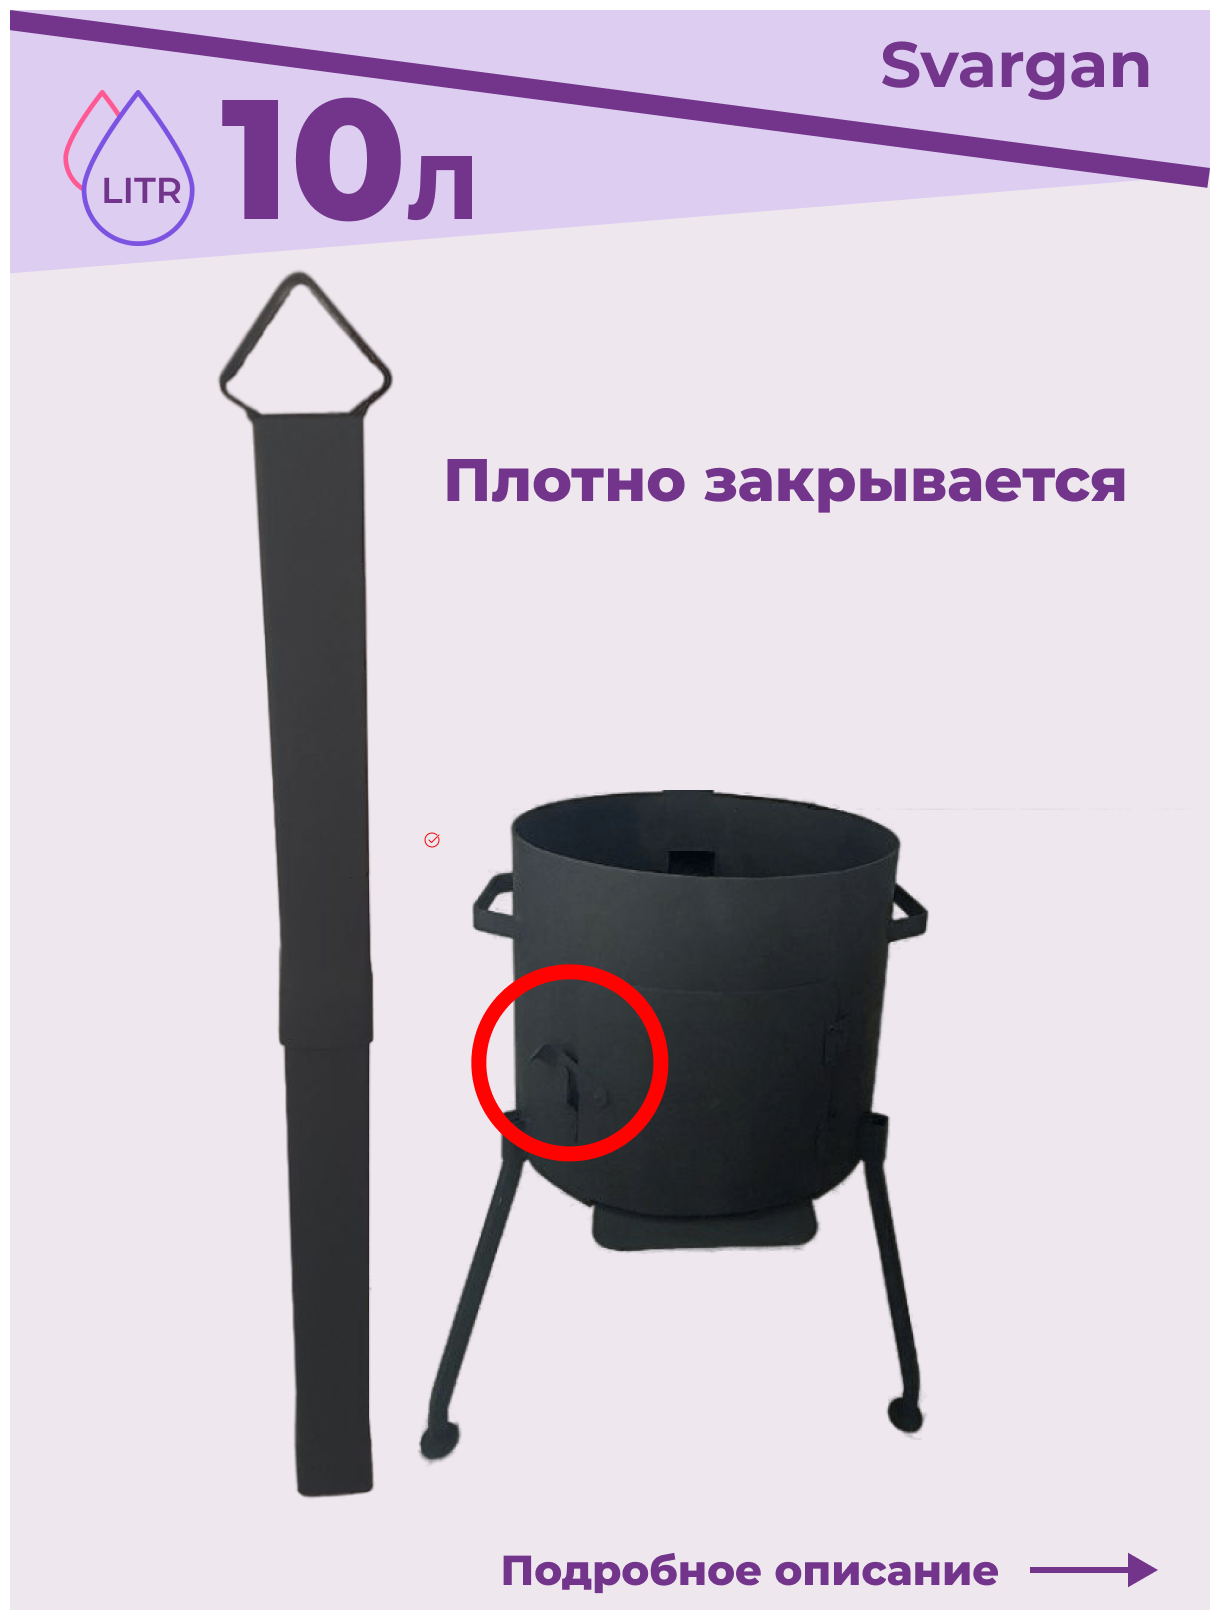 Печь с трубой и заслонкой в дымоходе + казан чугунный 10 литров узбекский с крышкой + шумовка половник и приправа в подарок